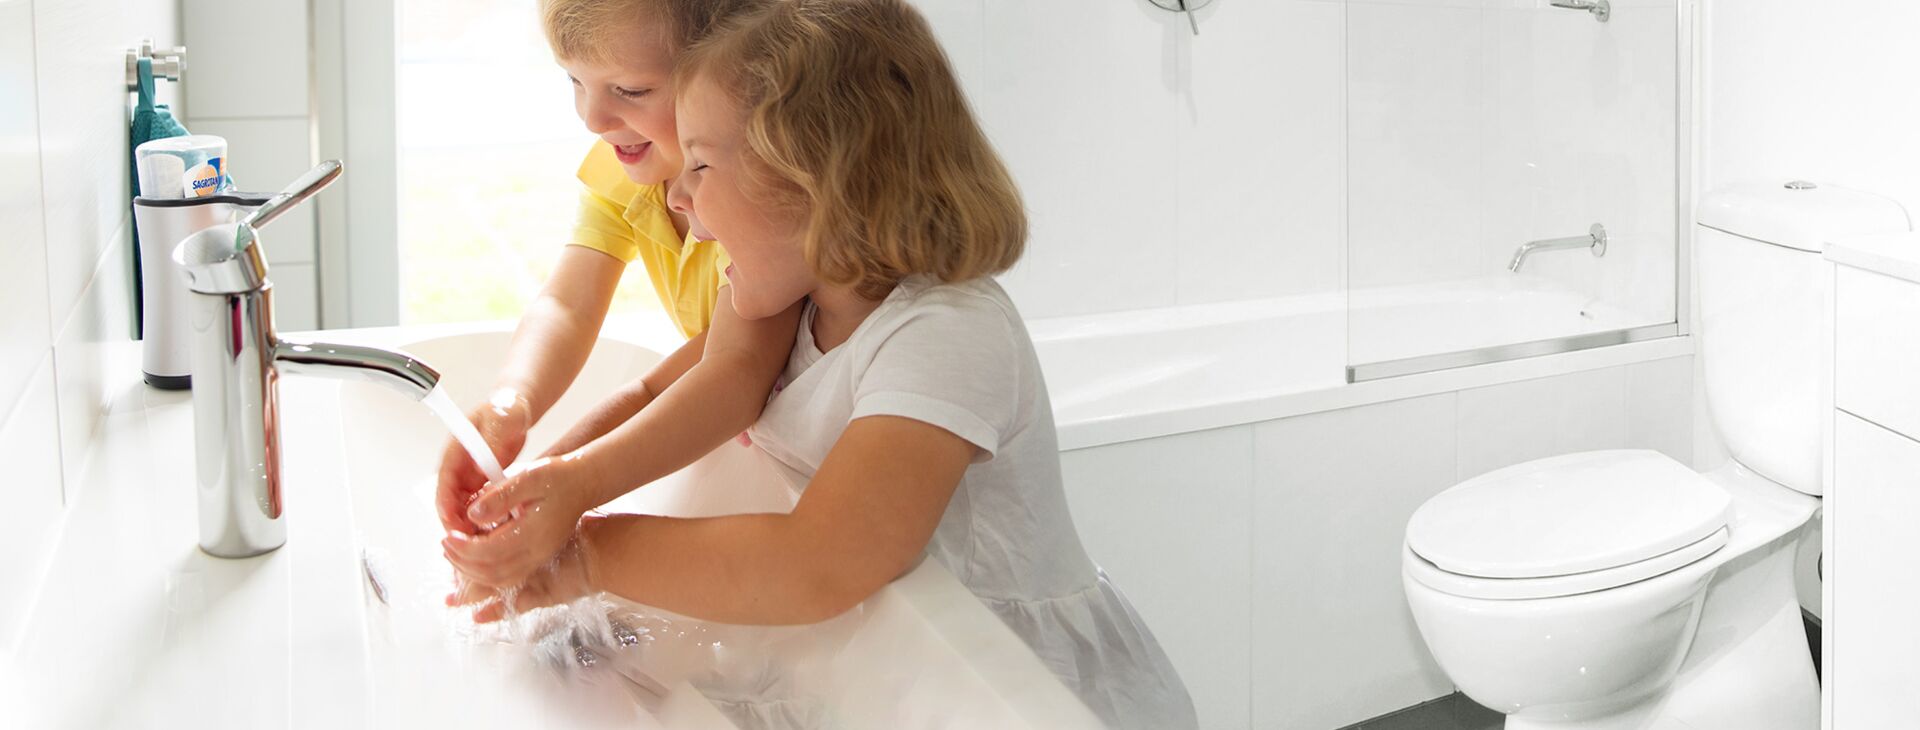 Zwei Kinder waschen sich an einem Waschbecken in einem Badezimmerdie Hände